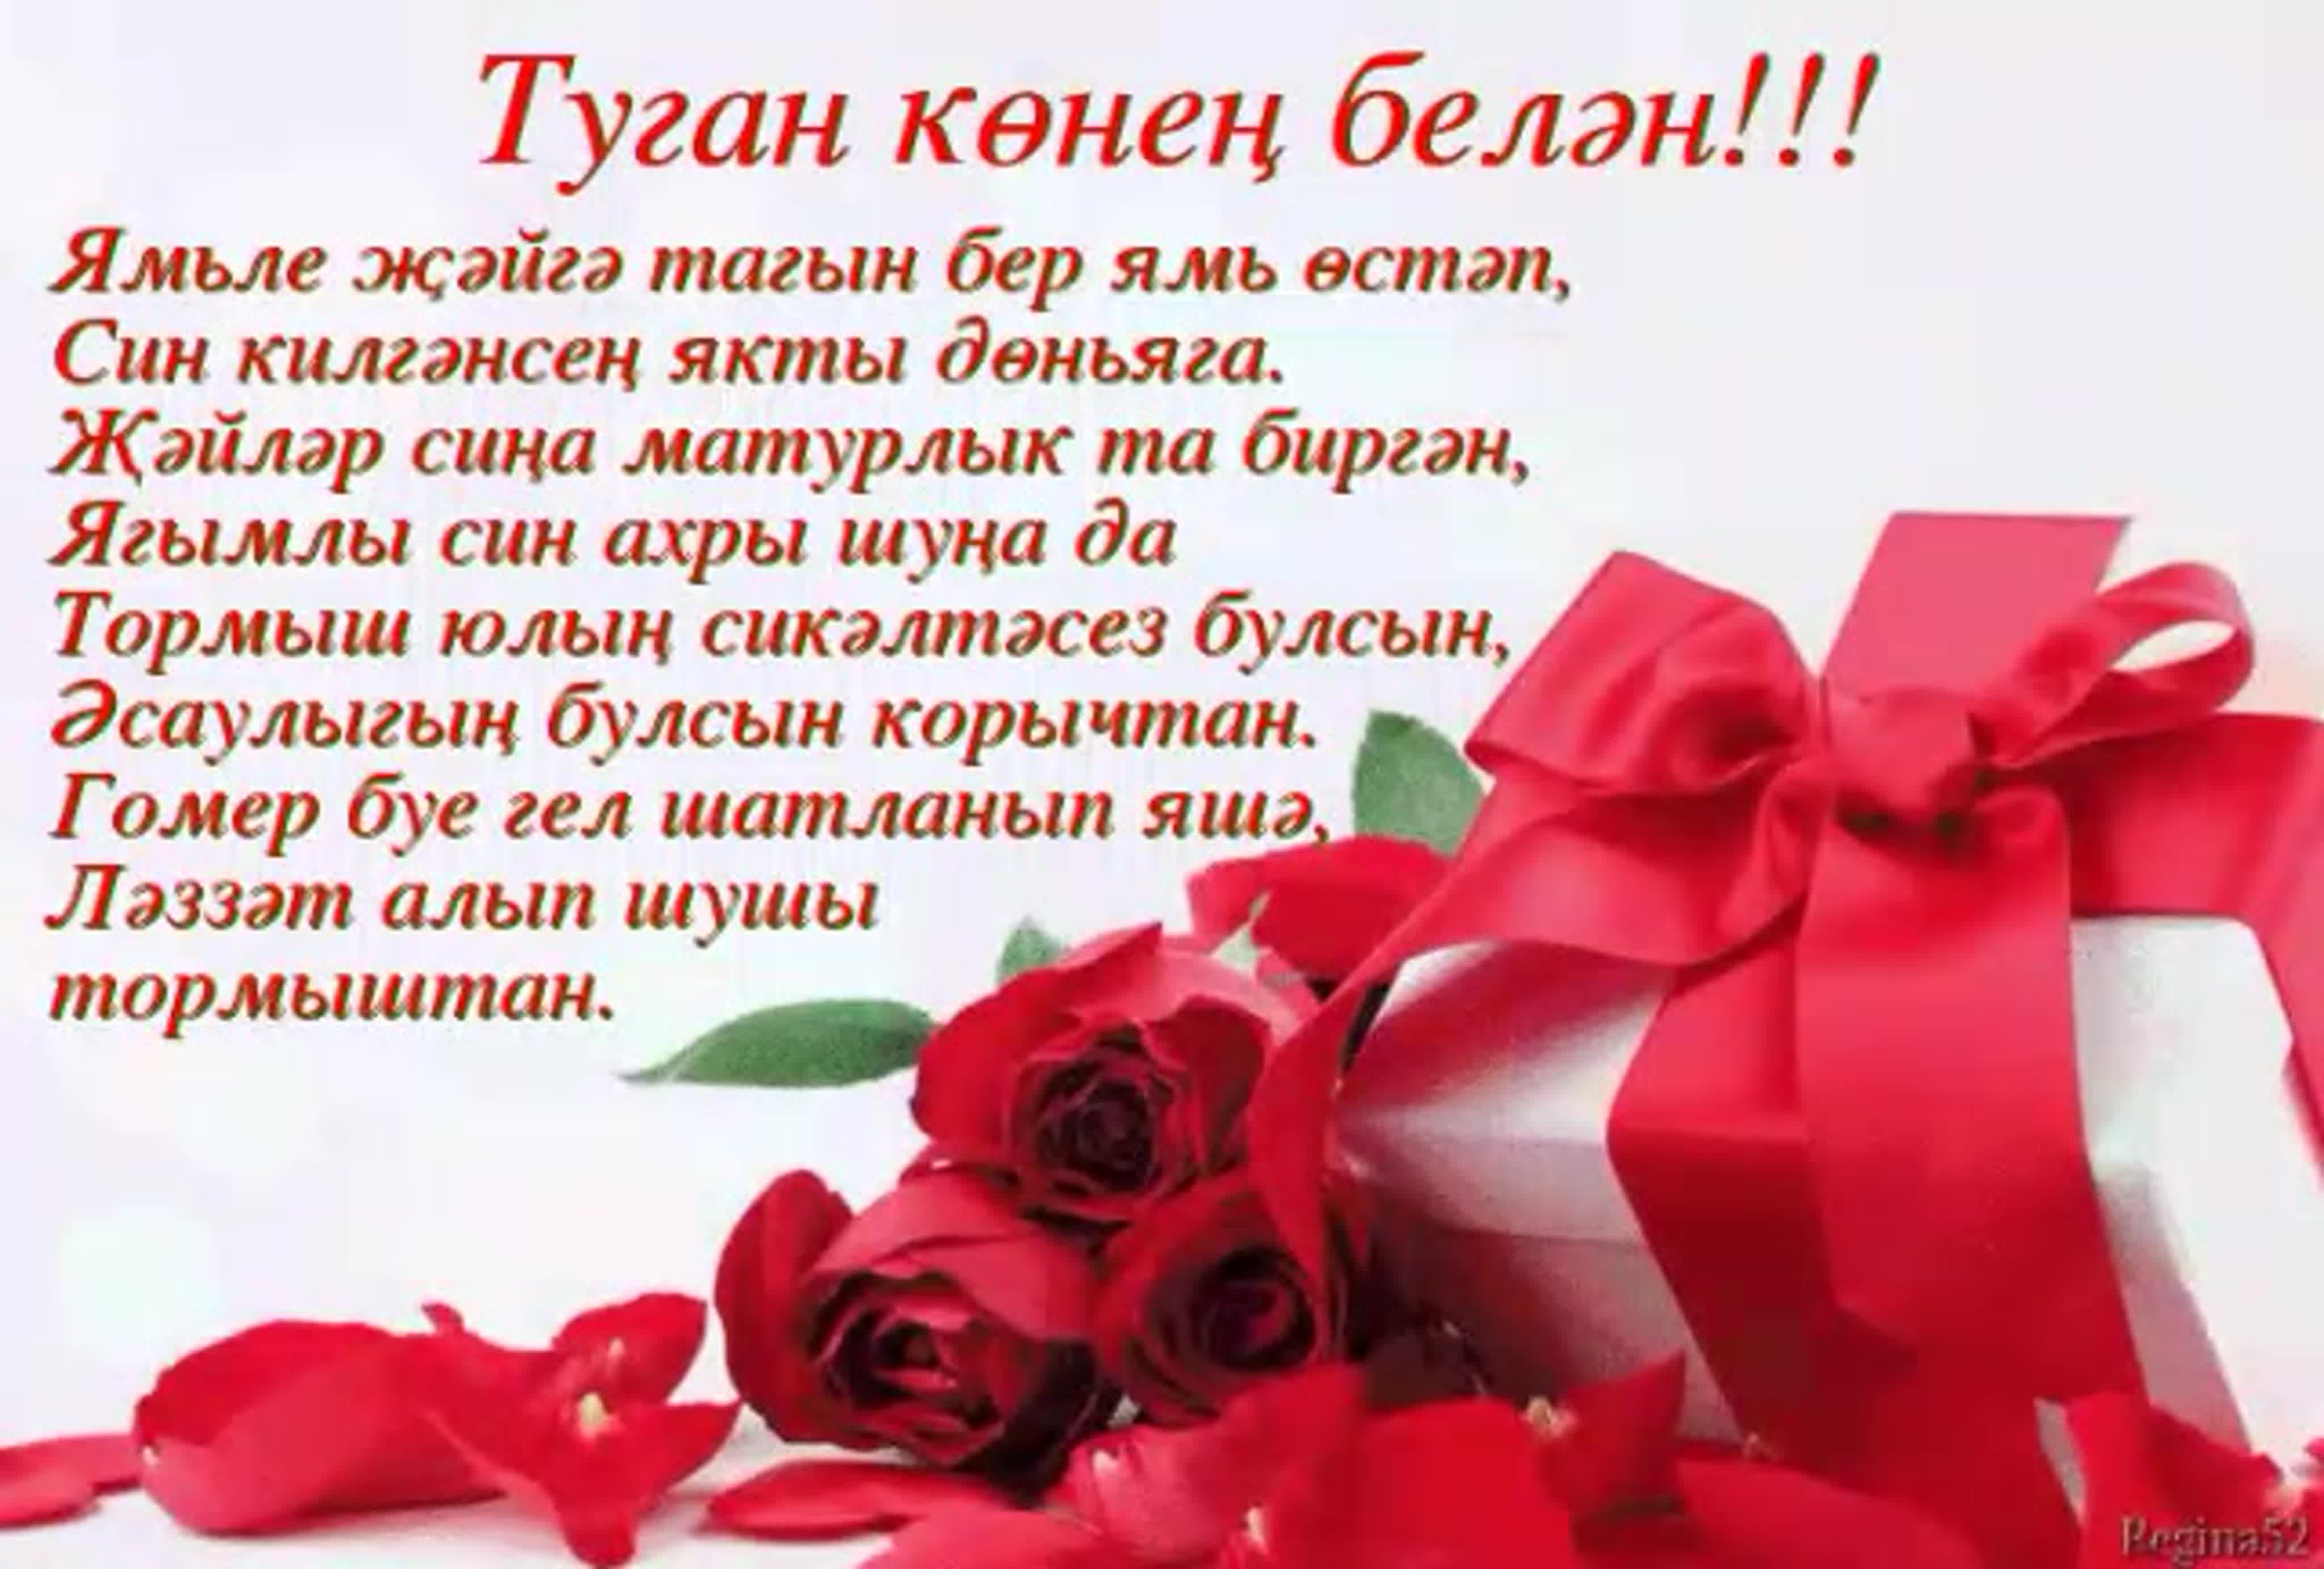 Поздравление на татарском языке подруге. Поздравления с днём с днём рождения на татарском языке. Поздравления с днём рождения женщине на татарском языке. Туган кон. С днём рождения на татарском языке женщине красивые пожеланиями.